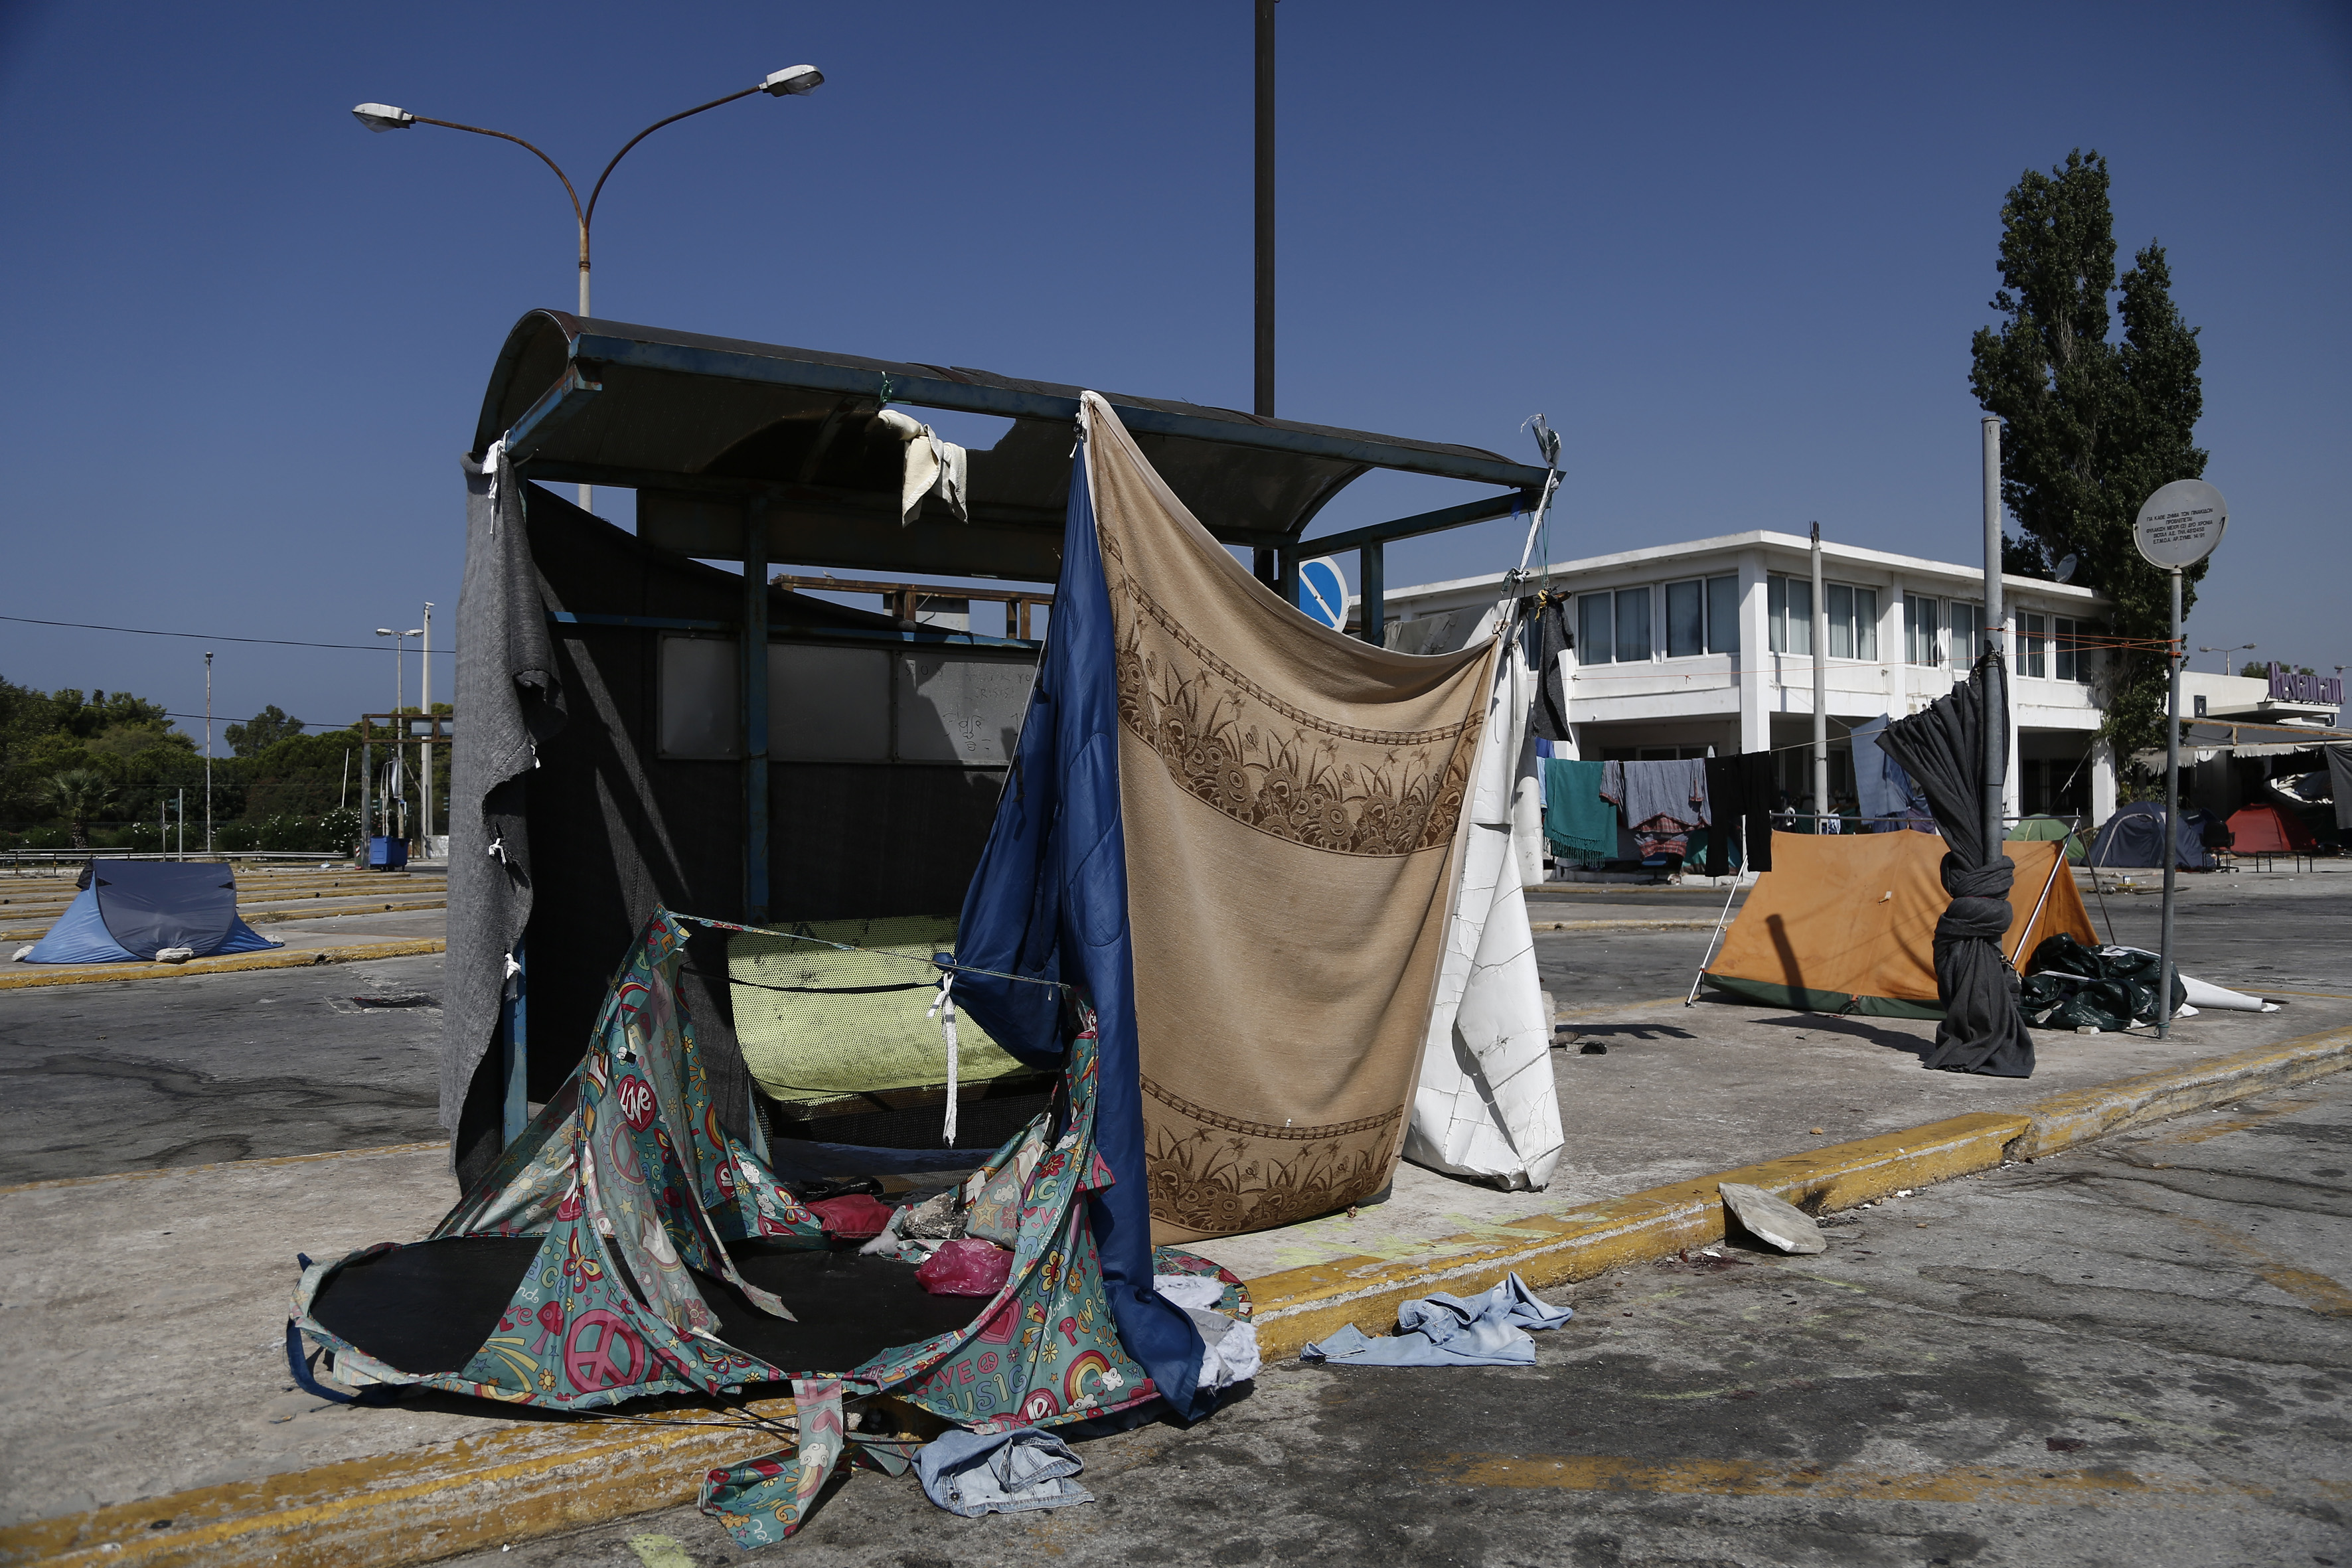 Αβραμόπουλος: Κυρώσεις στις χώρες που αρνούνται ανακατανομή προσφύγων